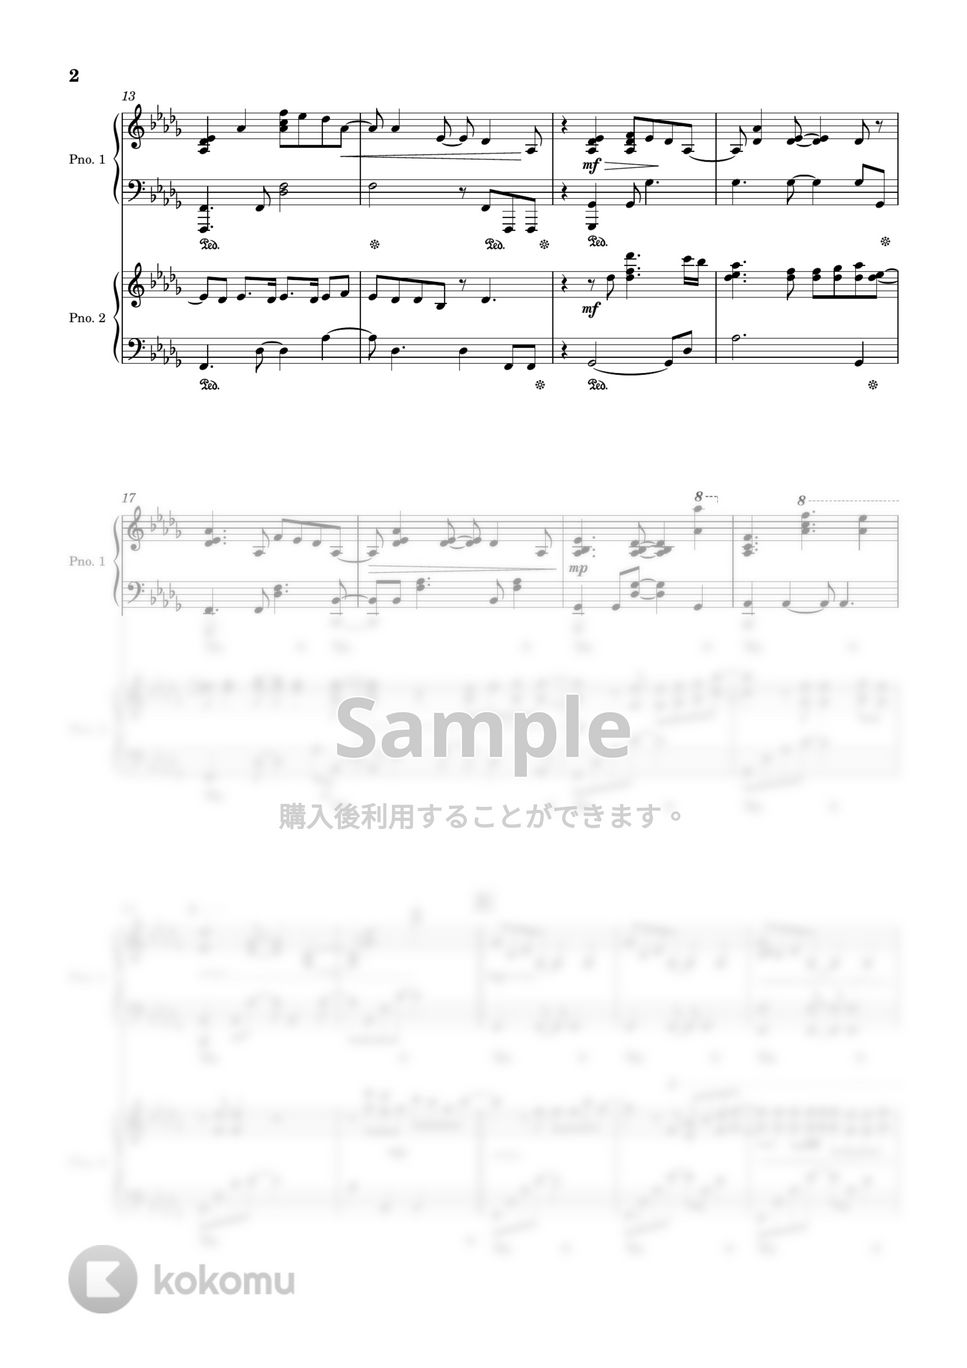 キタニタツヤ - 青のすみか (2台ピアノ上級 / Short ver.) by 夕立後の茜と薄明